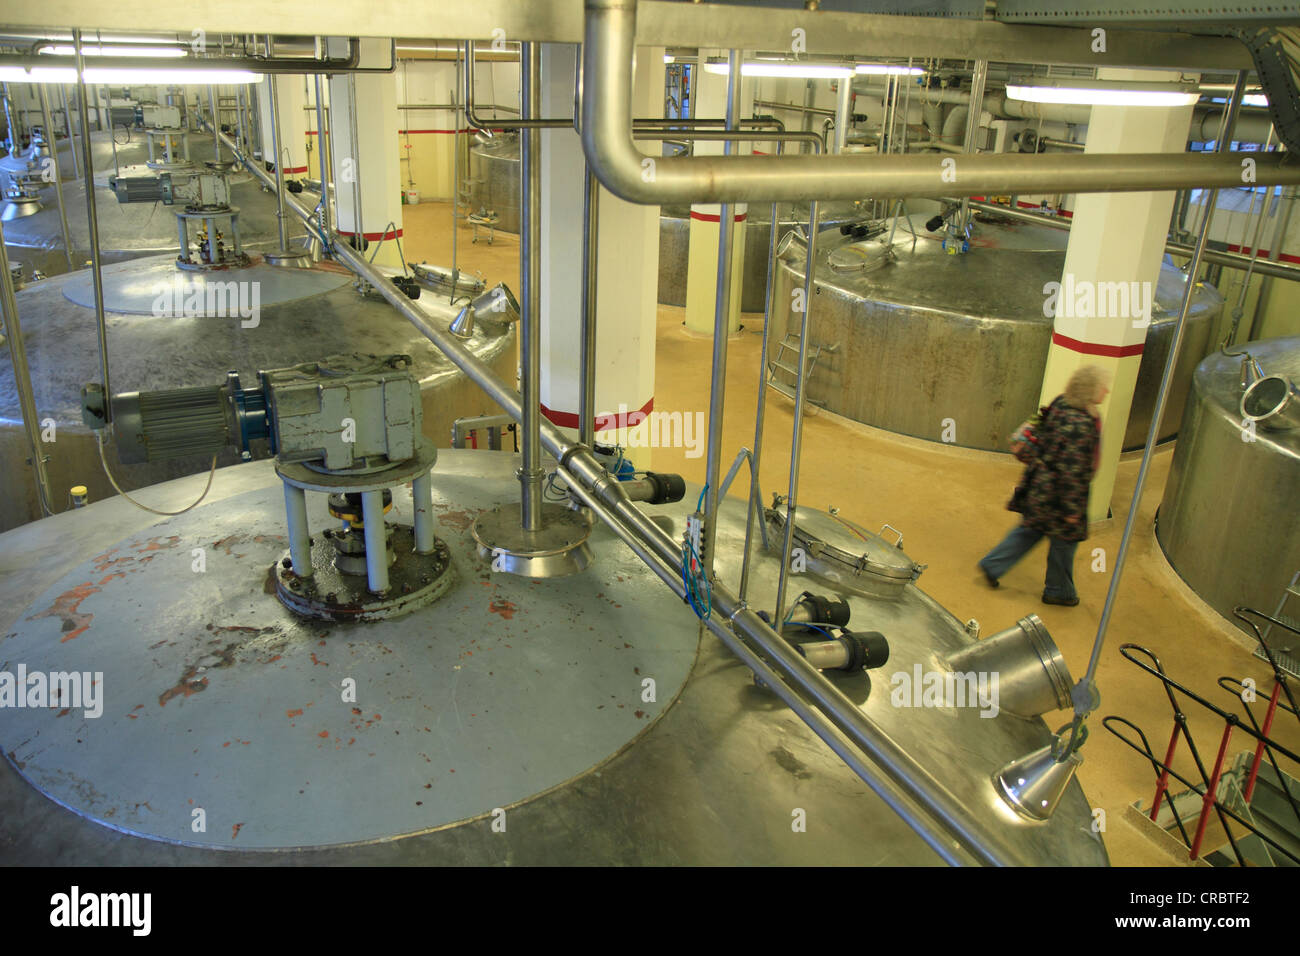 Réservoirs en acier inoxydable pour préparer le mash au cours de la production d'alcool, Aalborg Akvavit Aalborg, usine de spiritueux, le Nord du Jutland Banque D'Images